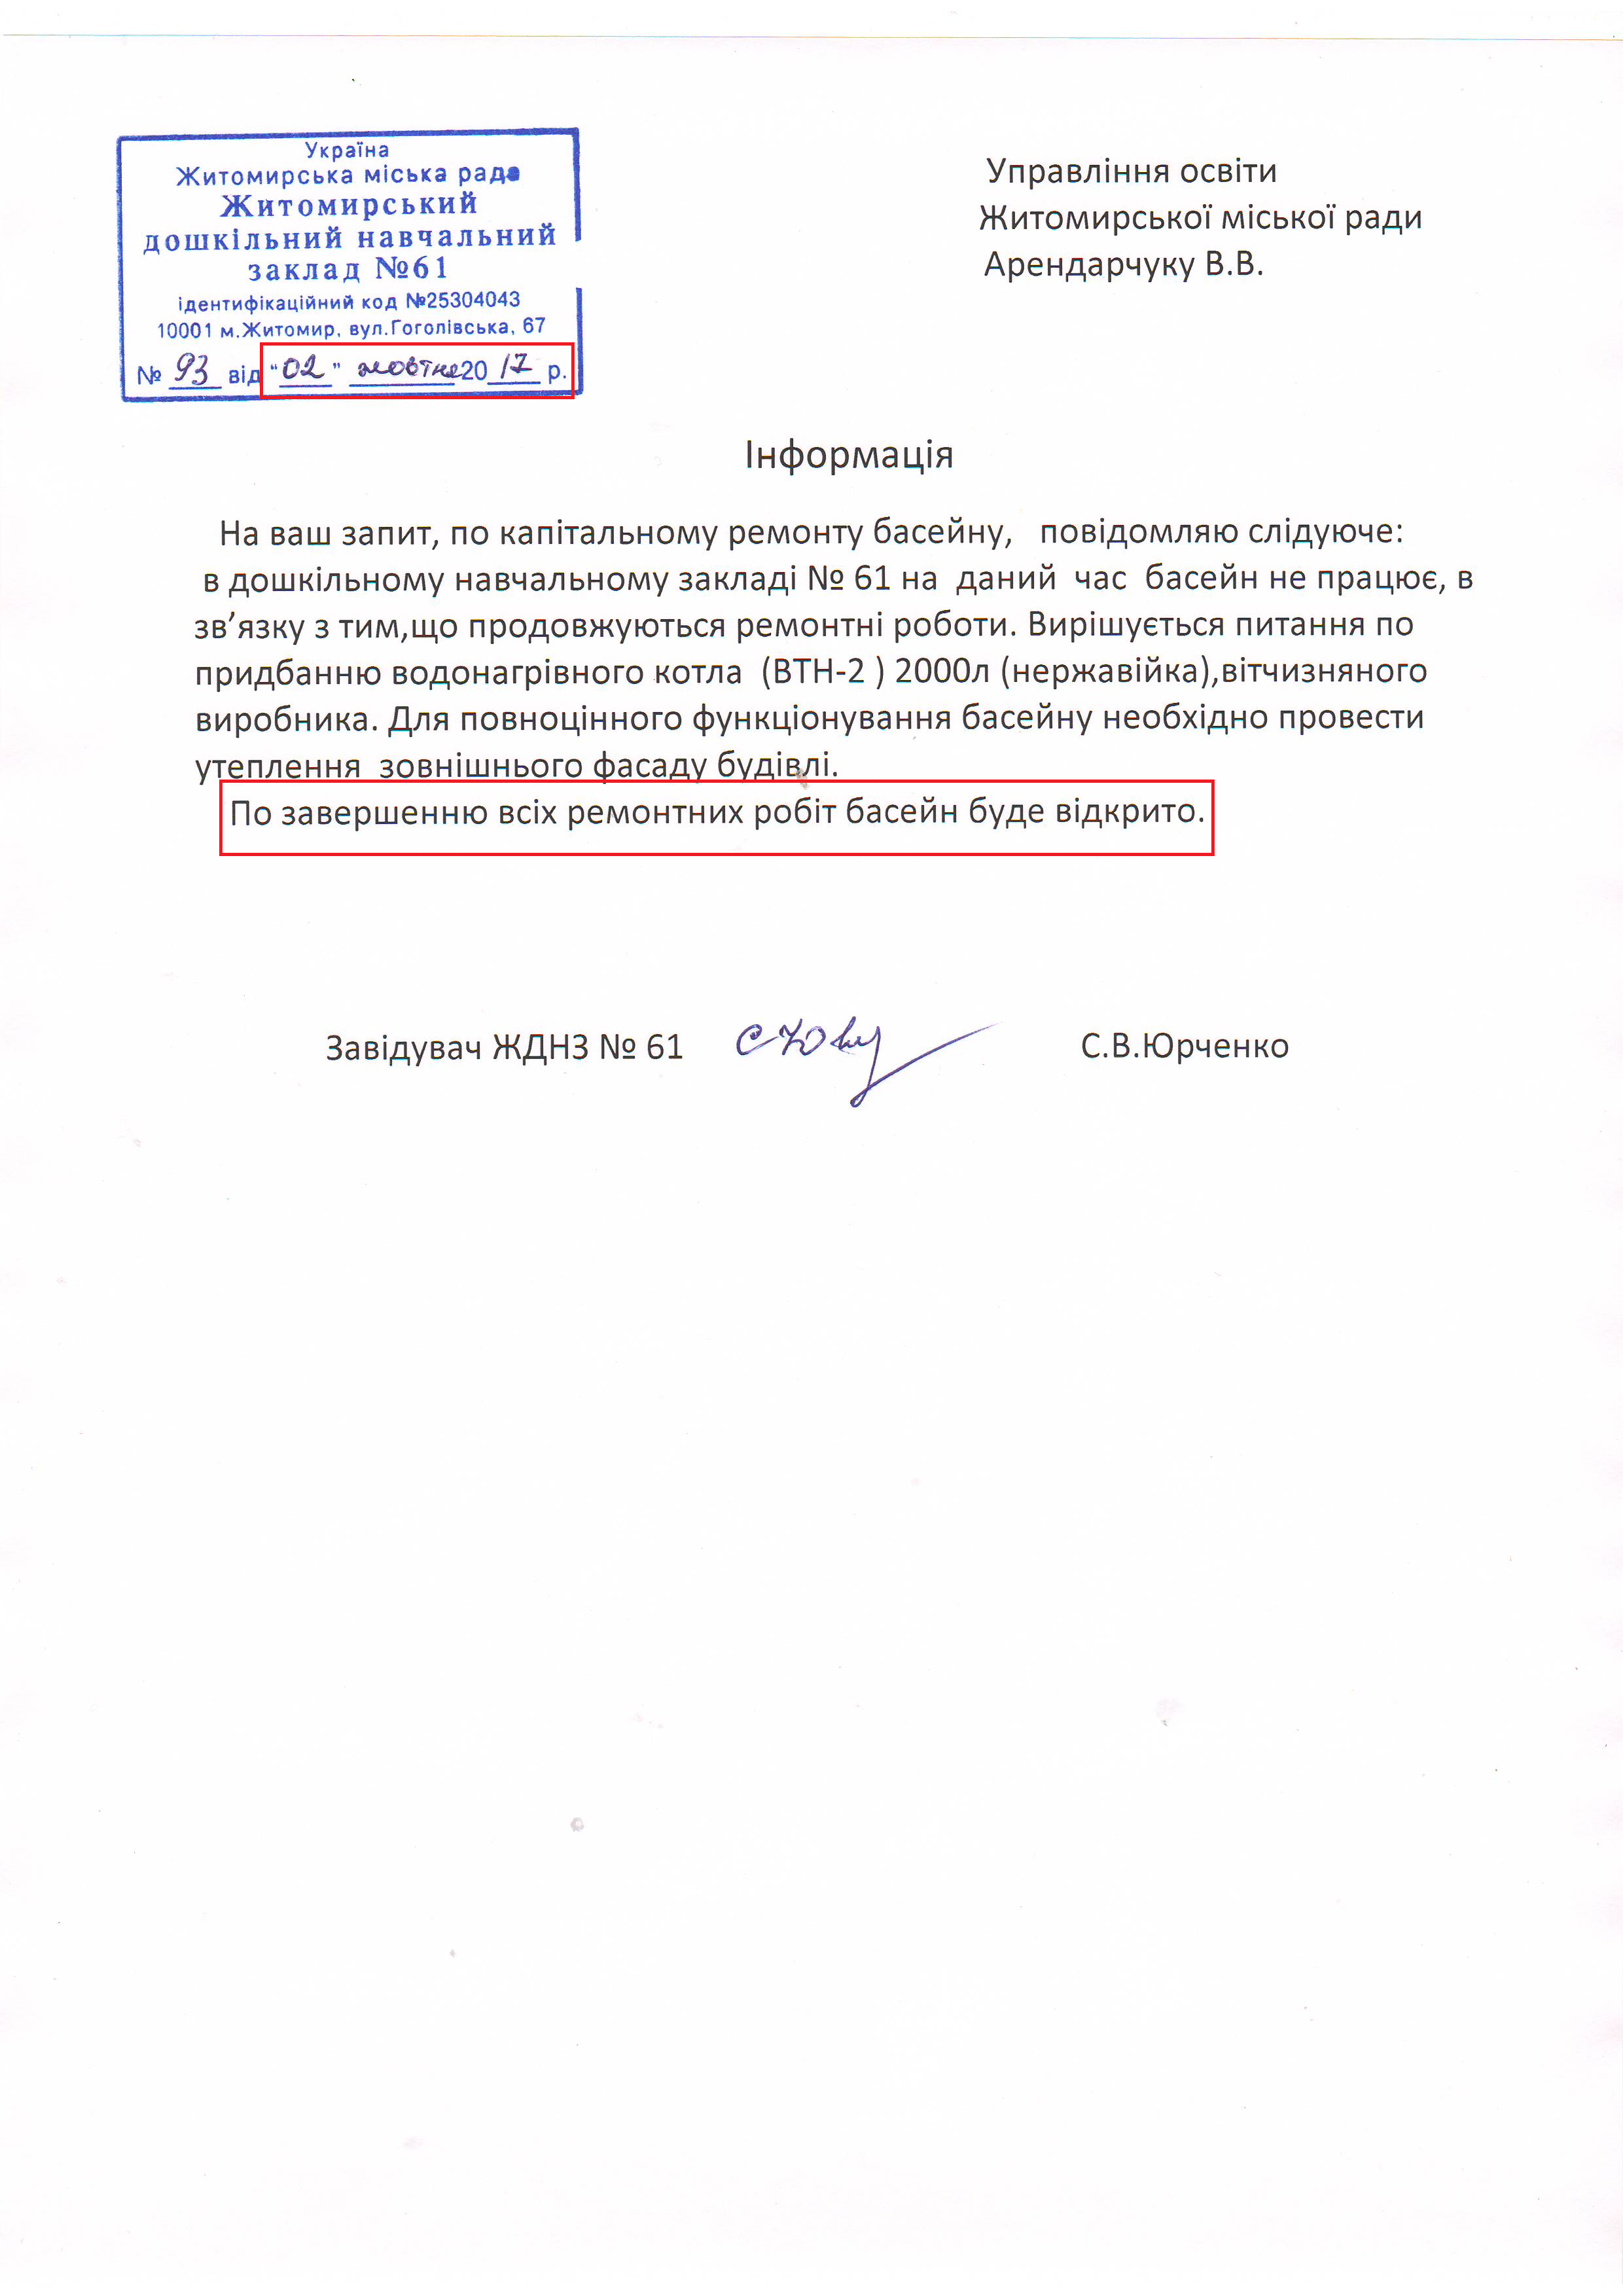 Лист Управління освіти Житомирської міської ради від 2 жовтня 2017 року